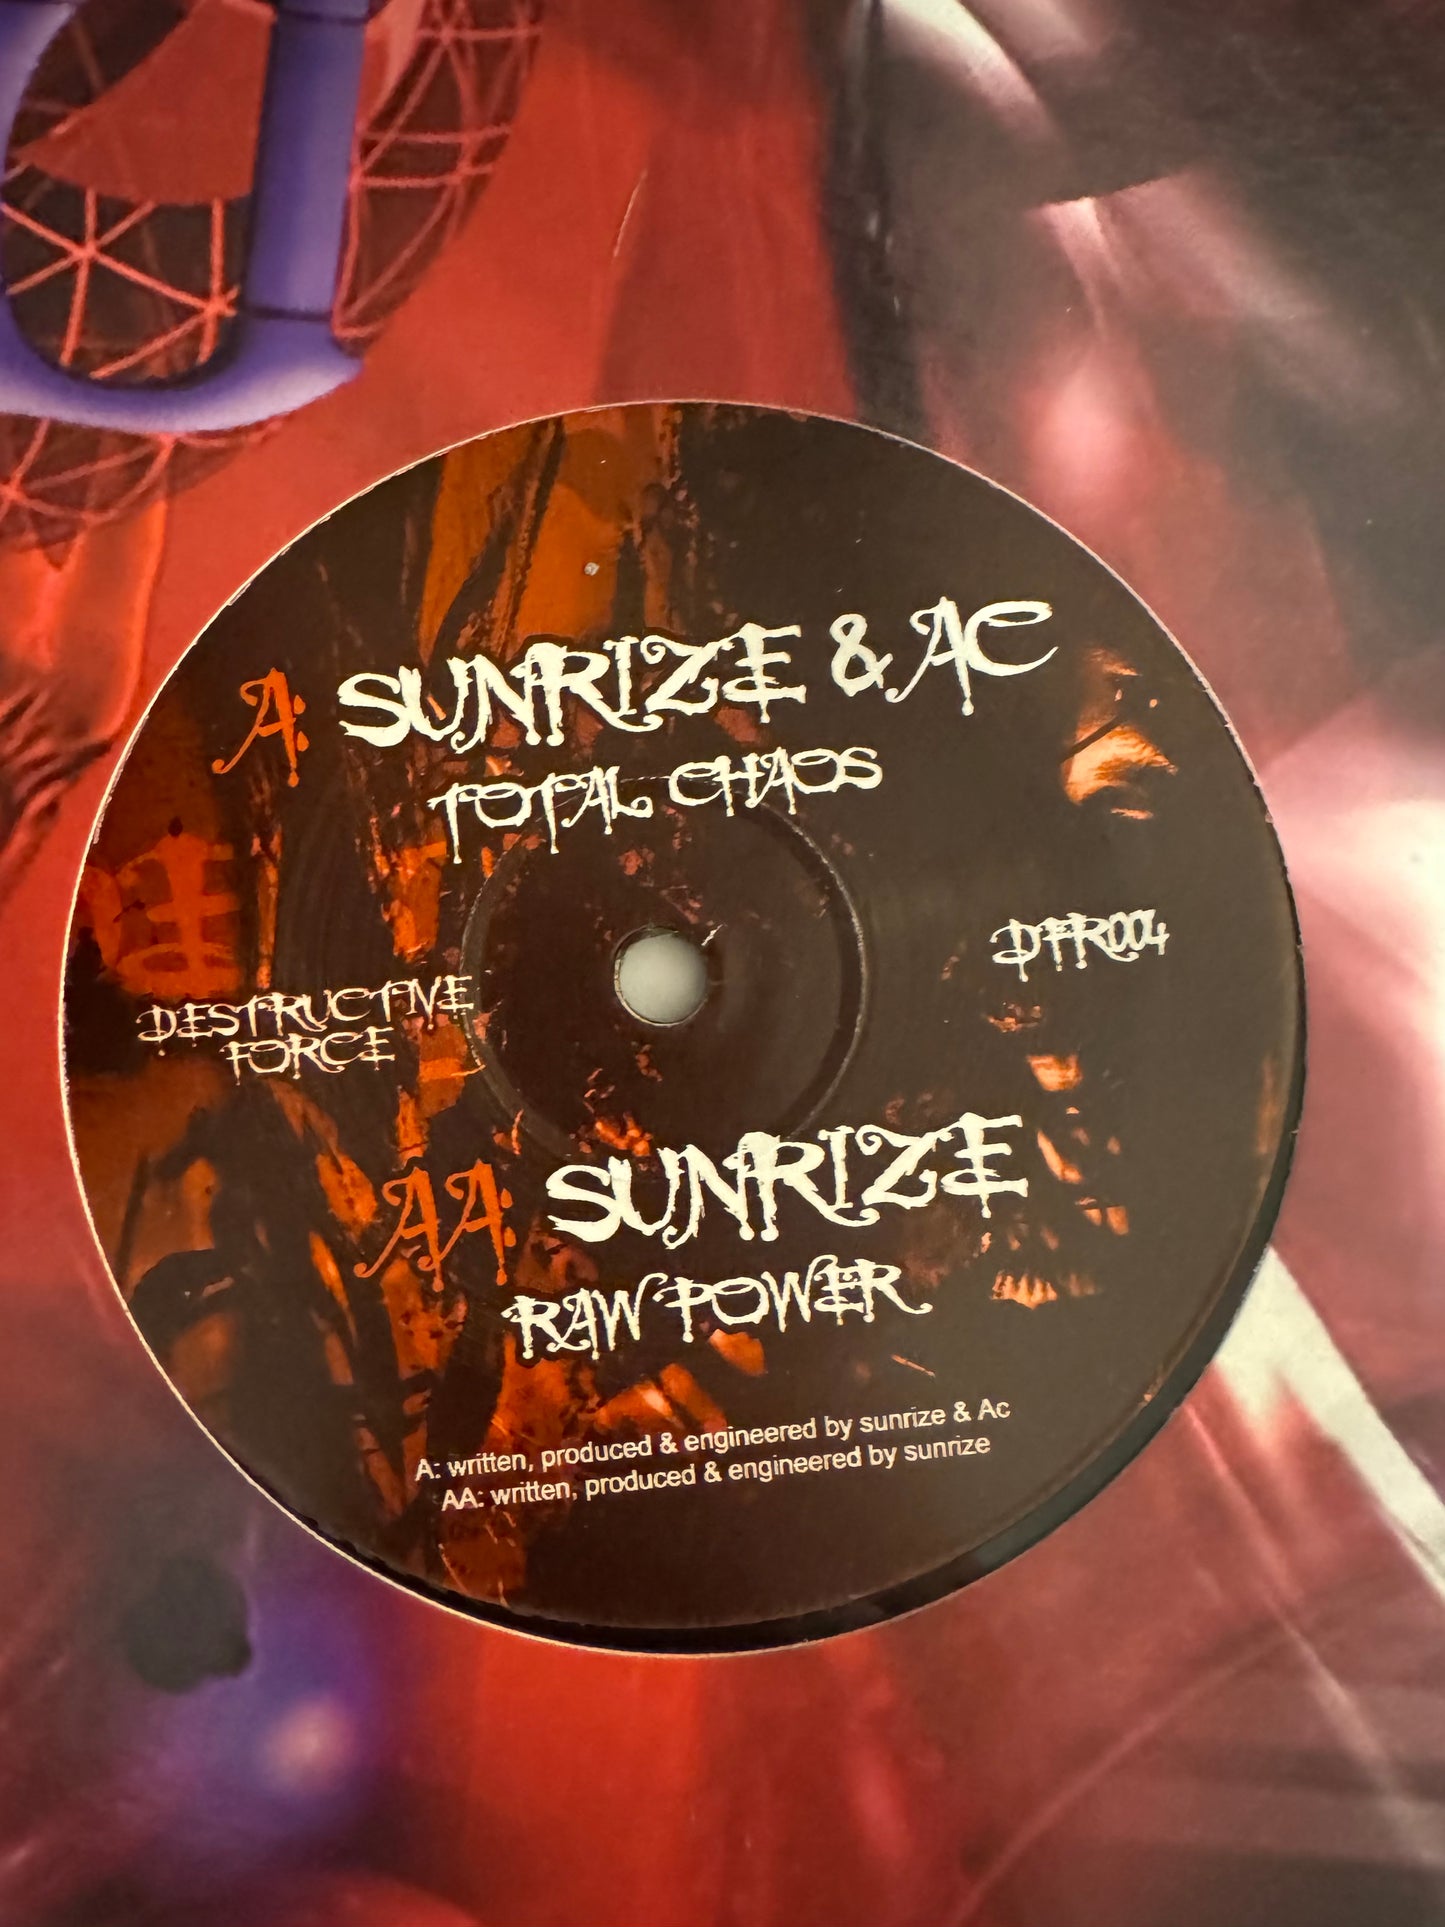 Destructive Force - Sunrize & AC - Total Chaos VINYL